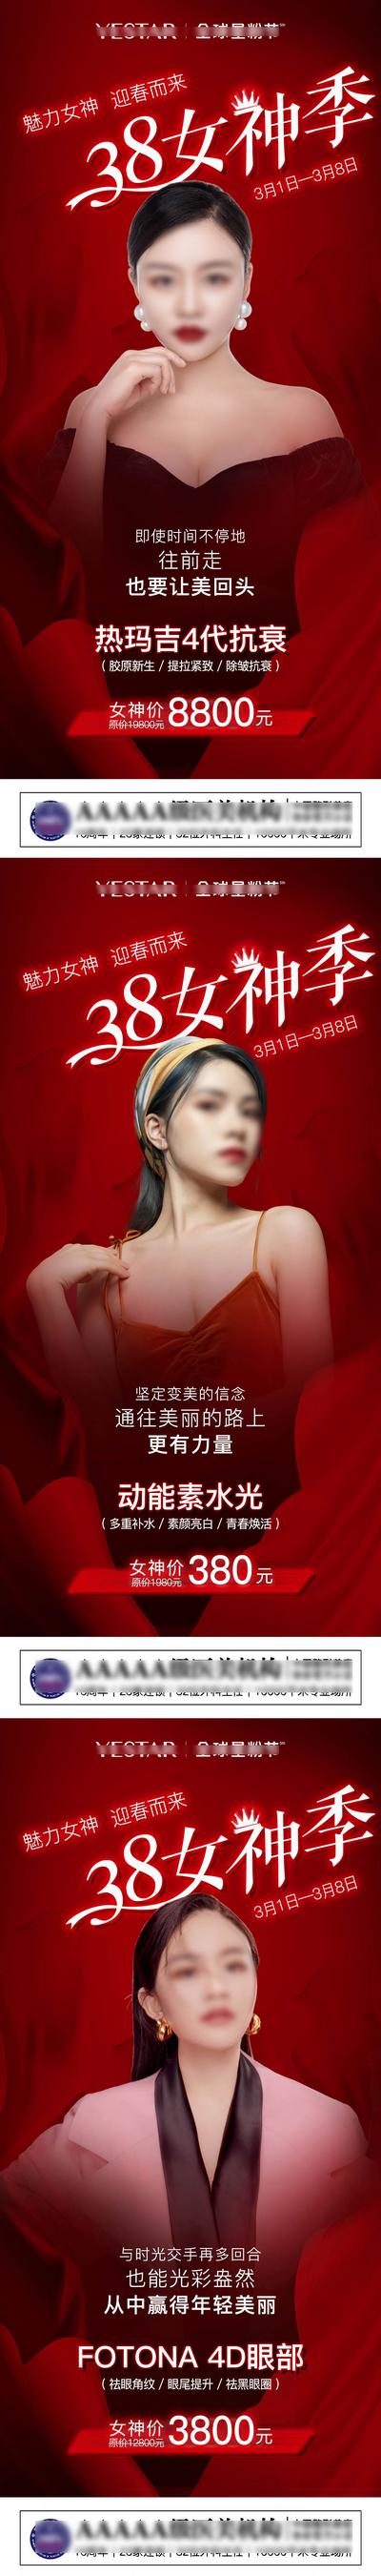 南门网 海报 医美 公历节日 38 女神节 妇女节 活动 红金 系列